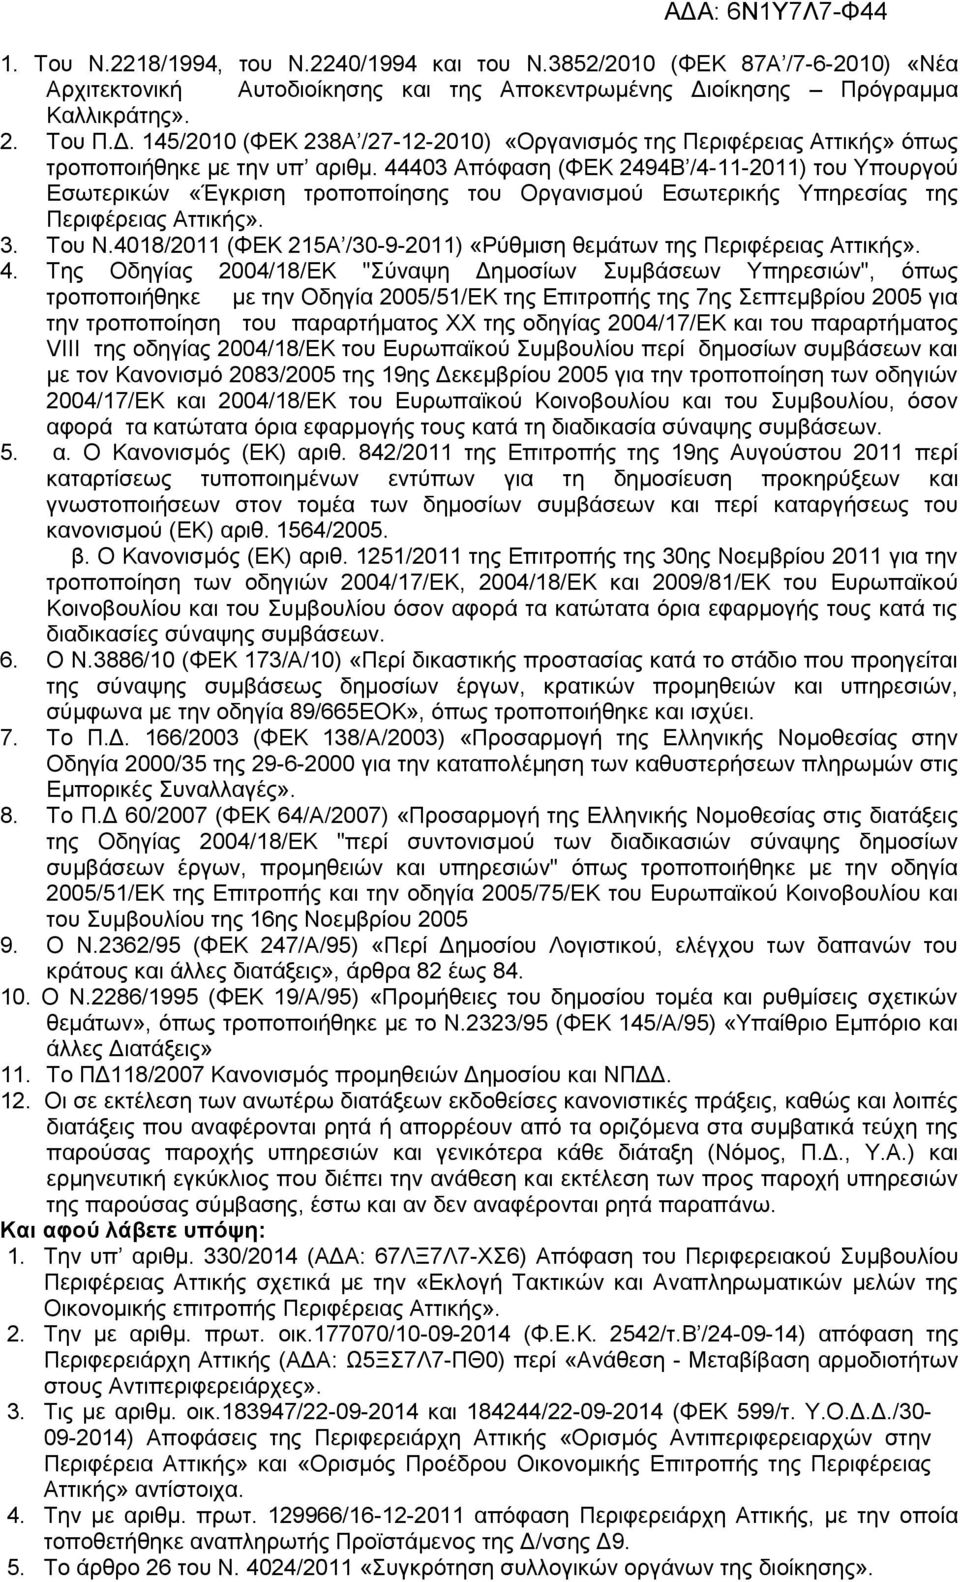 44403 Απόφαση (ΦΕΚ 2494Β /4-11-2011) του Υπουργού Εσωτερικών «Έγκριση τροποποίησης του Οργανισμού Εσωτερικής Υπηρεσίας της Περιφέρειας Αττικής». 3. Του Ν.